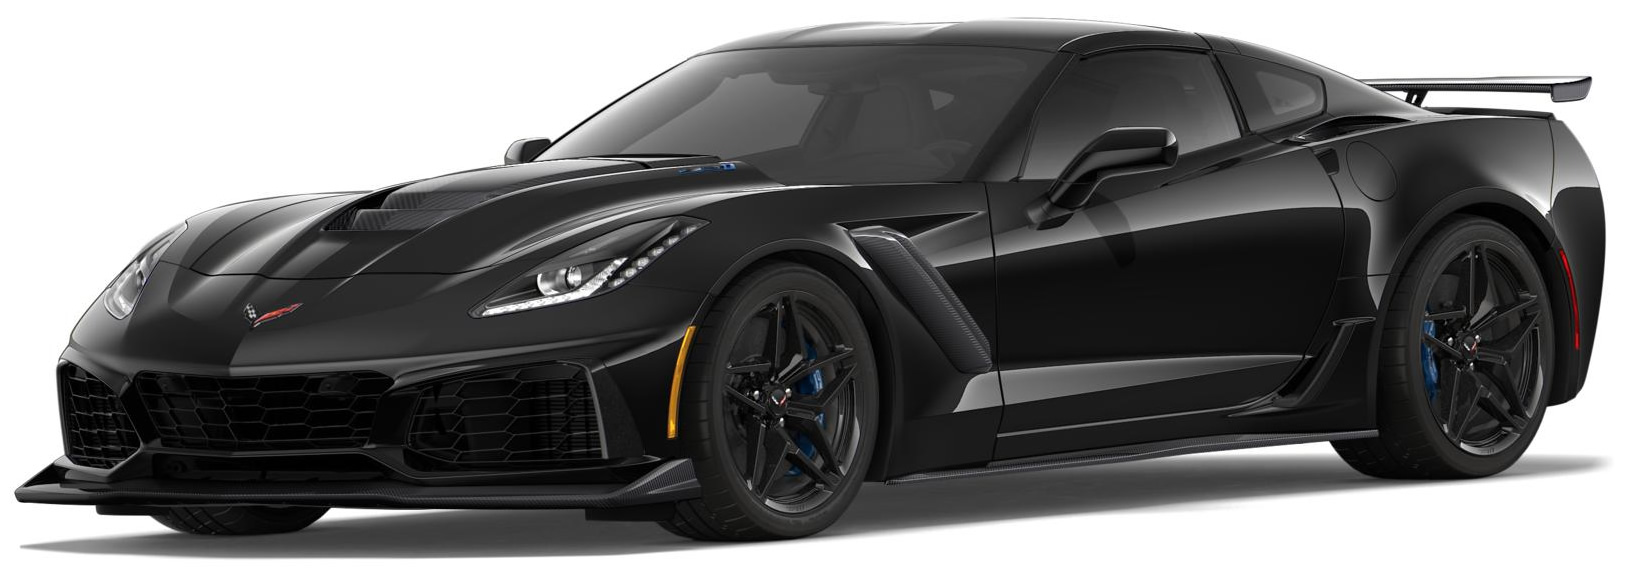 2019 Corvette ZR1 Coupe in Black